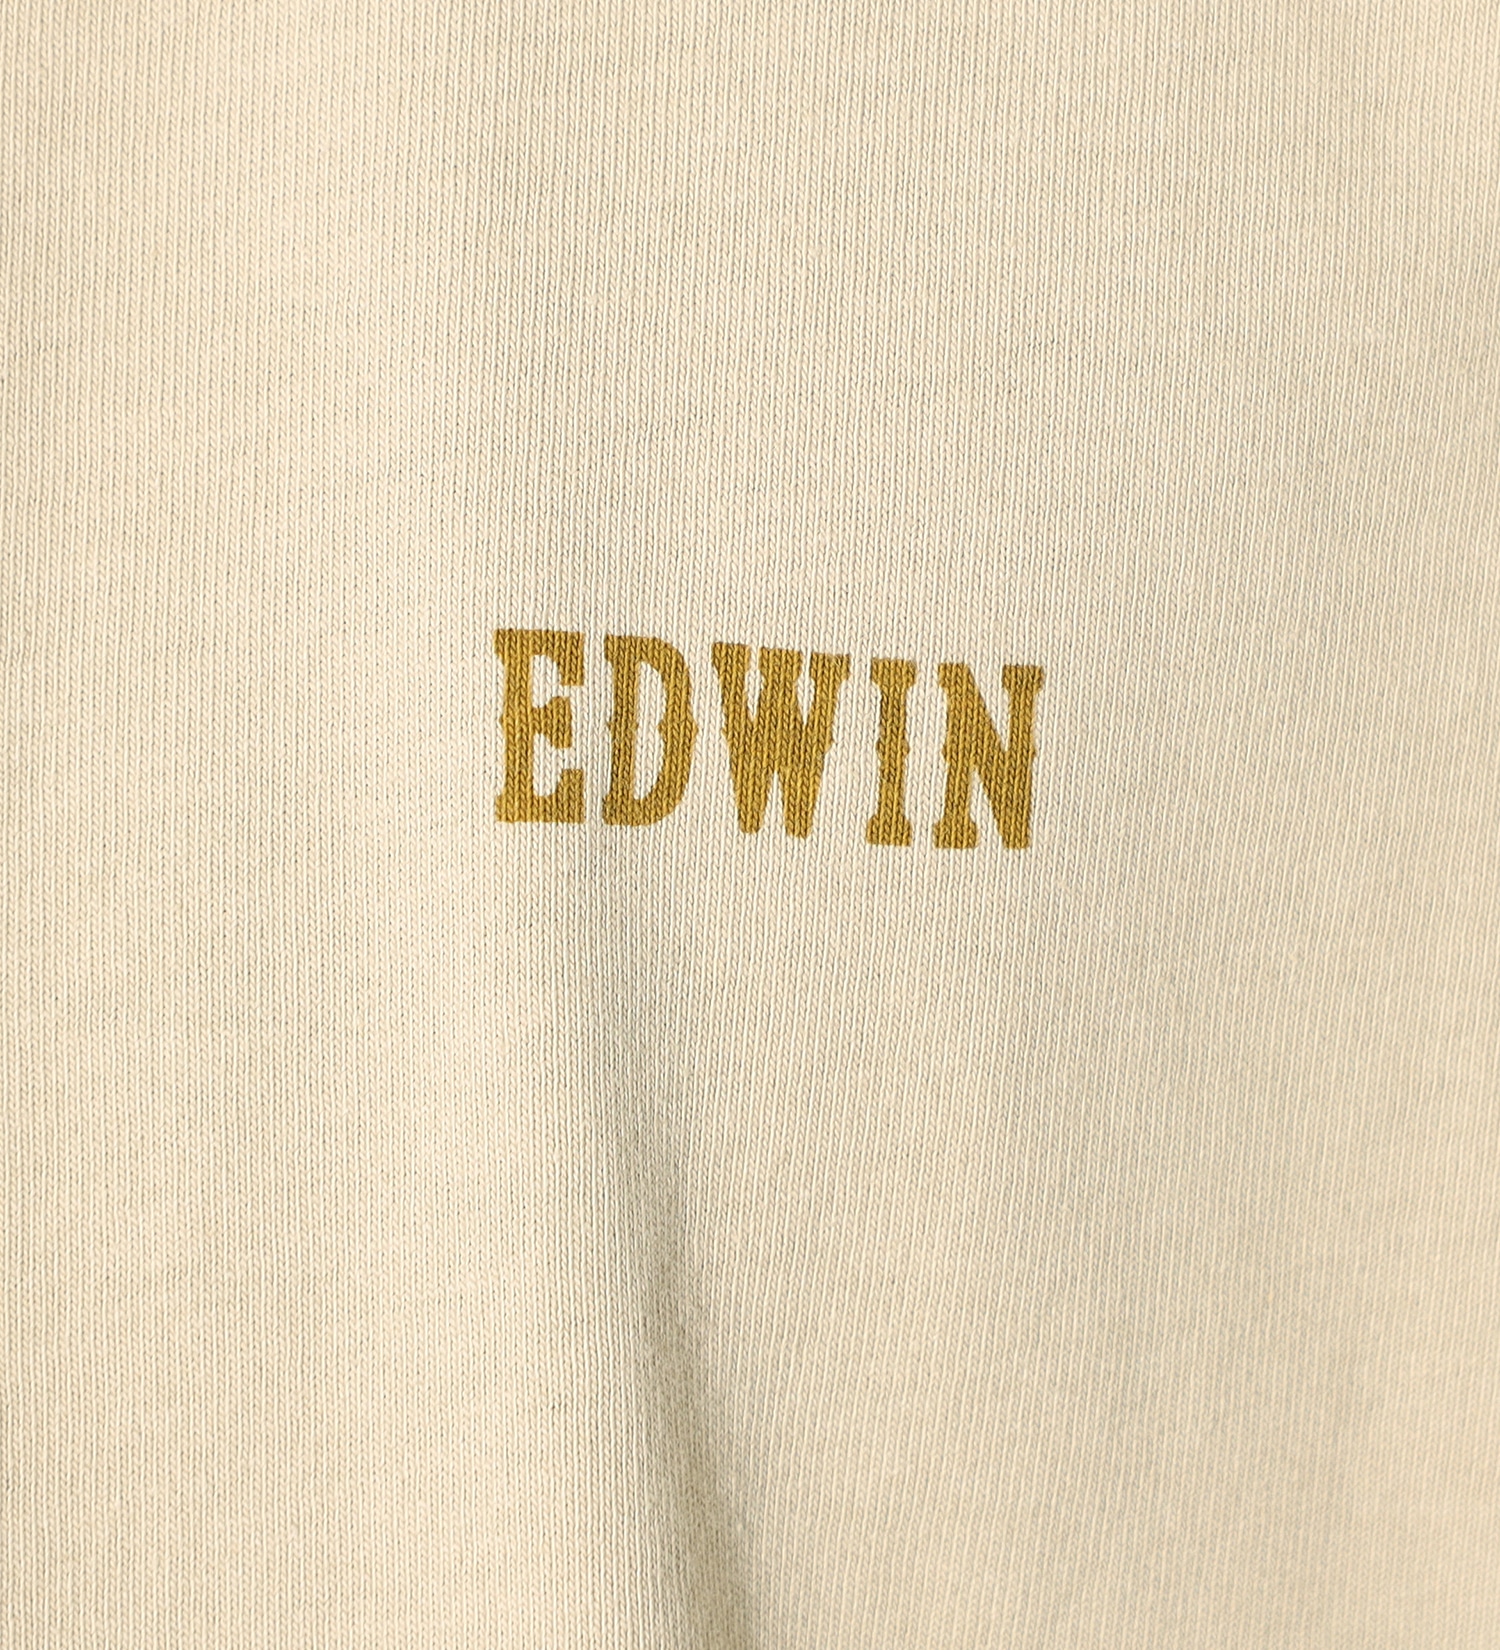 EDWIN(エドウイン)の【SALE】バックプリント FUJIYAMA Tシャツ 長袖|トップス/Tシャツ/カットソー/メンズ|ベージュ